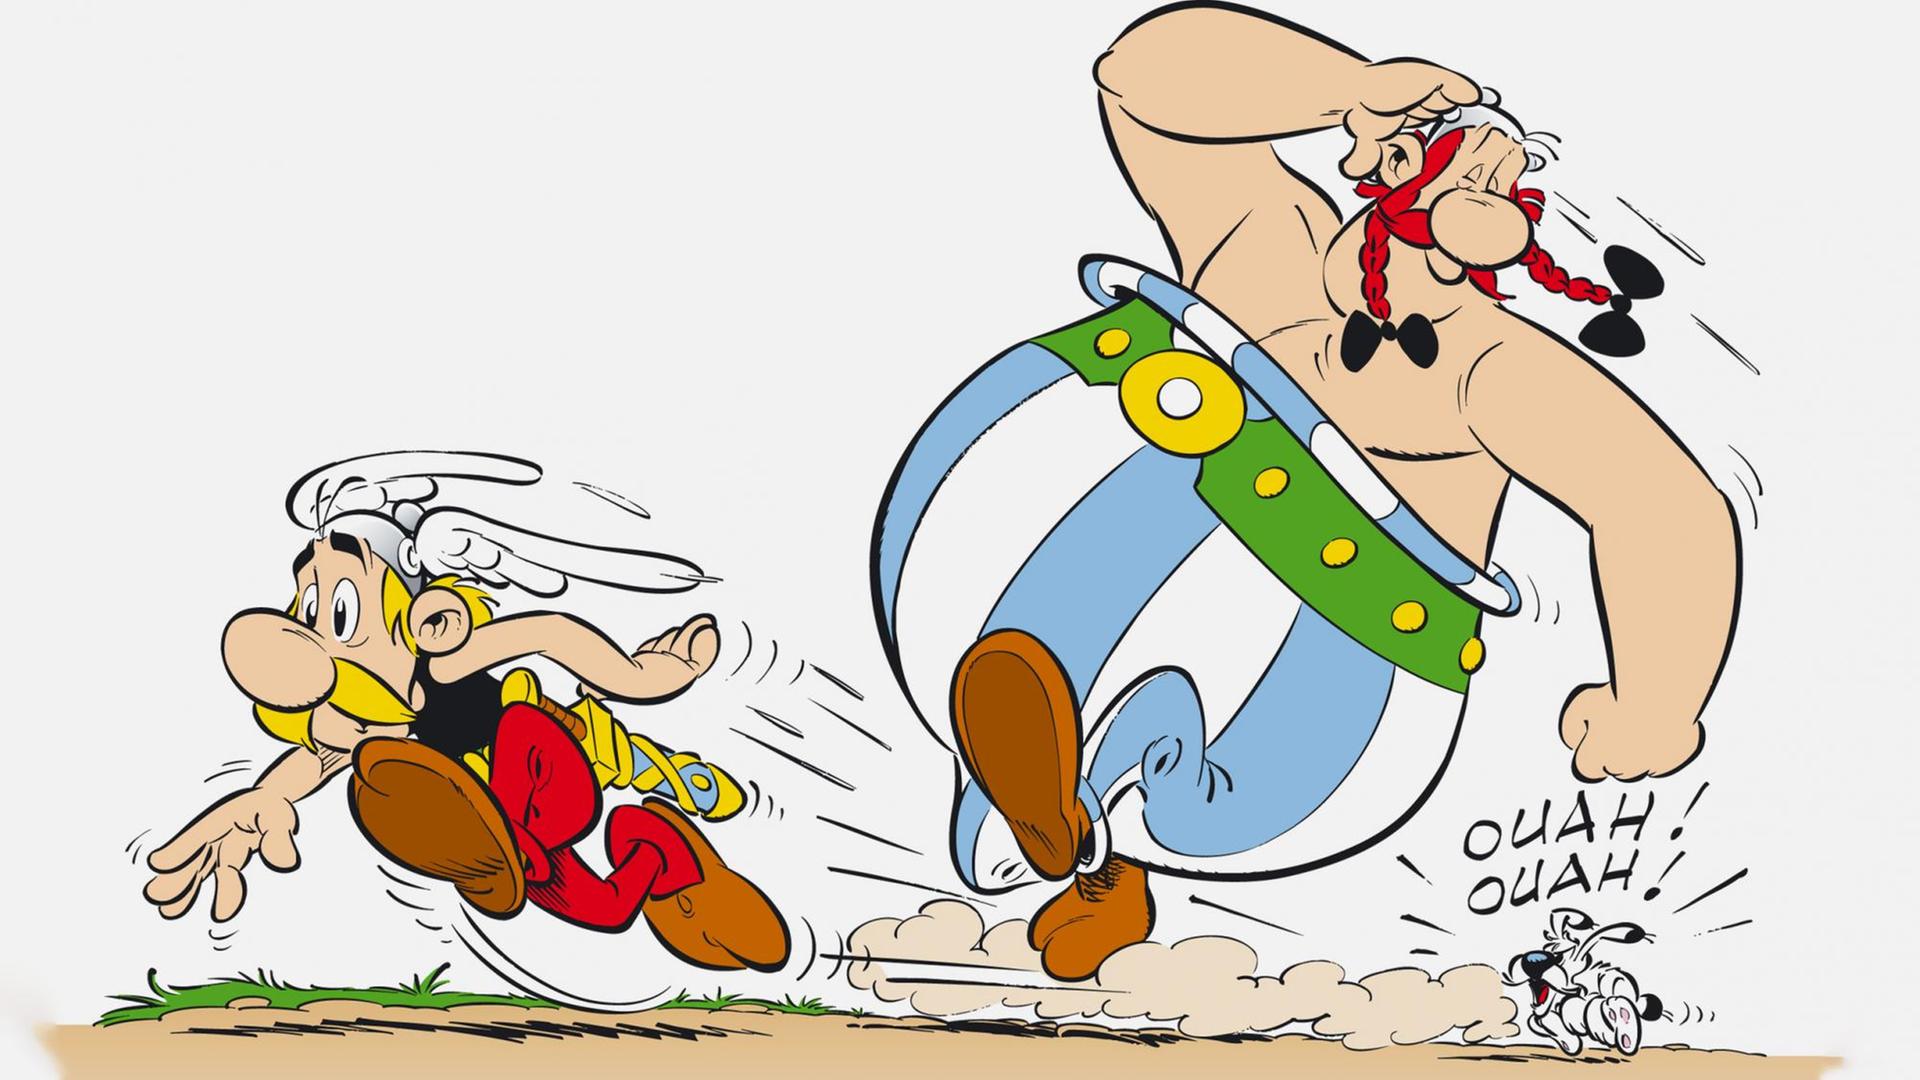 Zeichnung aus dem Comic Asterix und Obelix in der Asterix, Obelix und Idefix wegrennen.